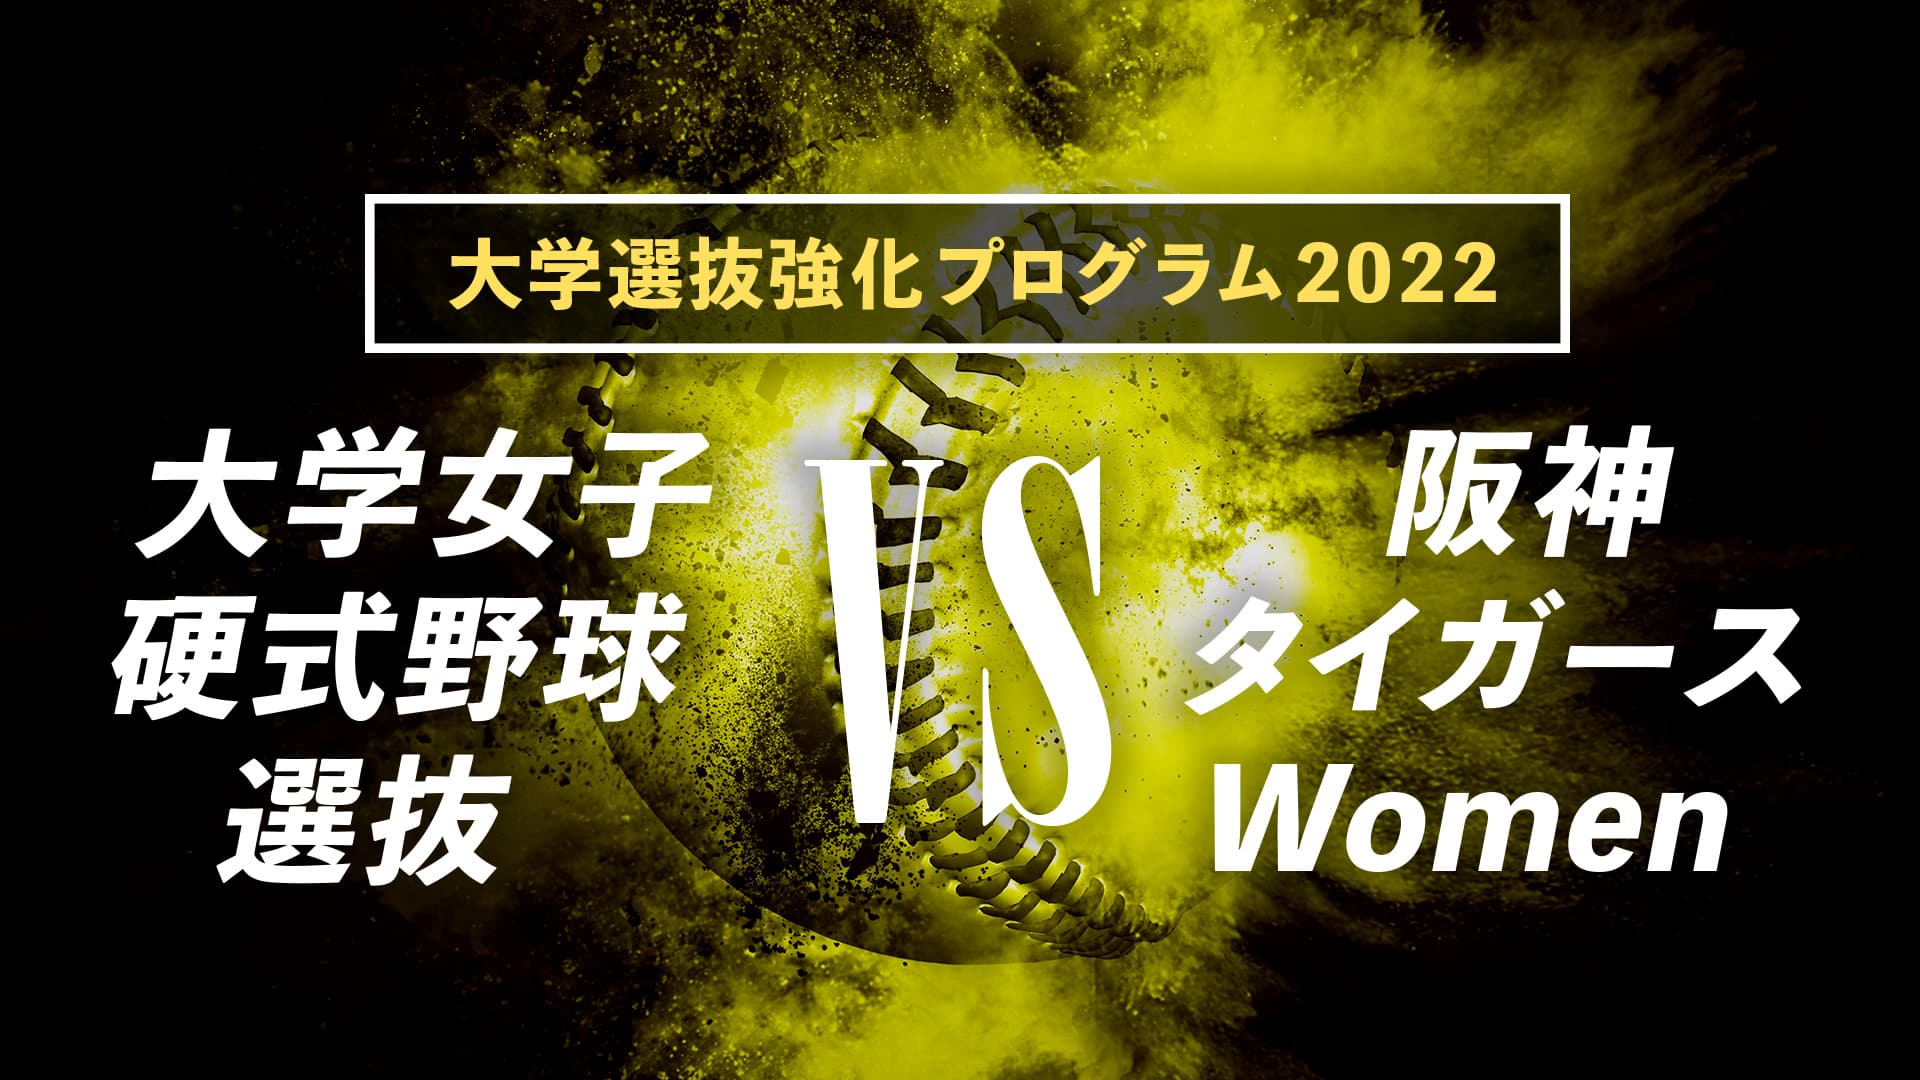 大学選抜強化プログラム2022『大学女子硬式野球選抜 vs 阪神タイガースWomen』